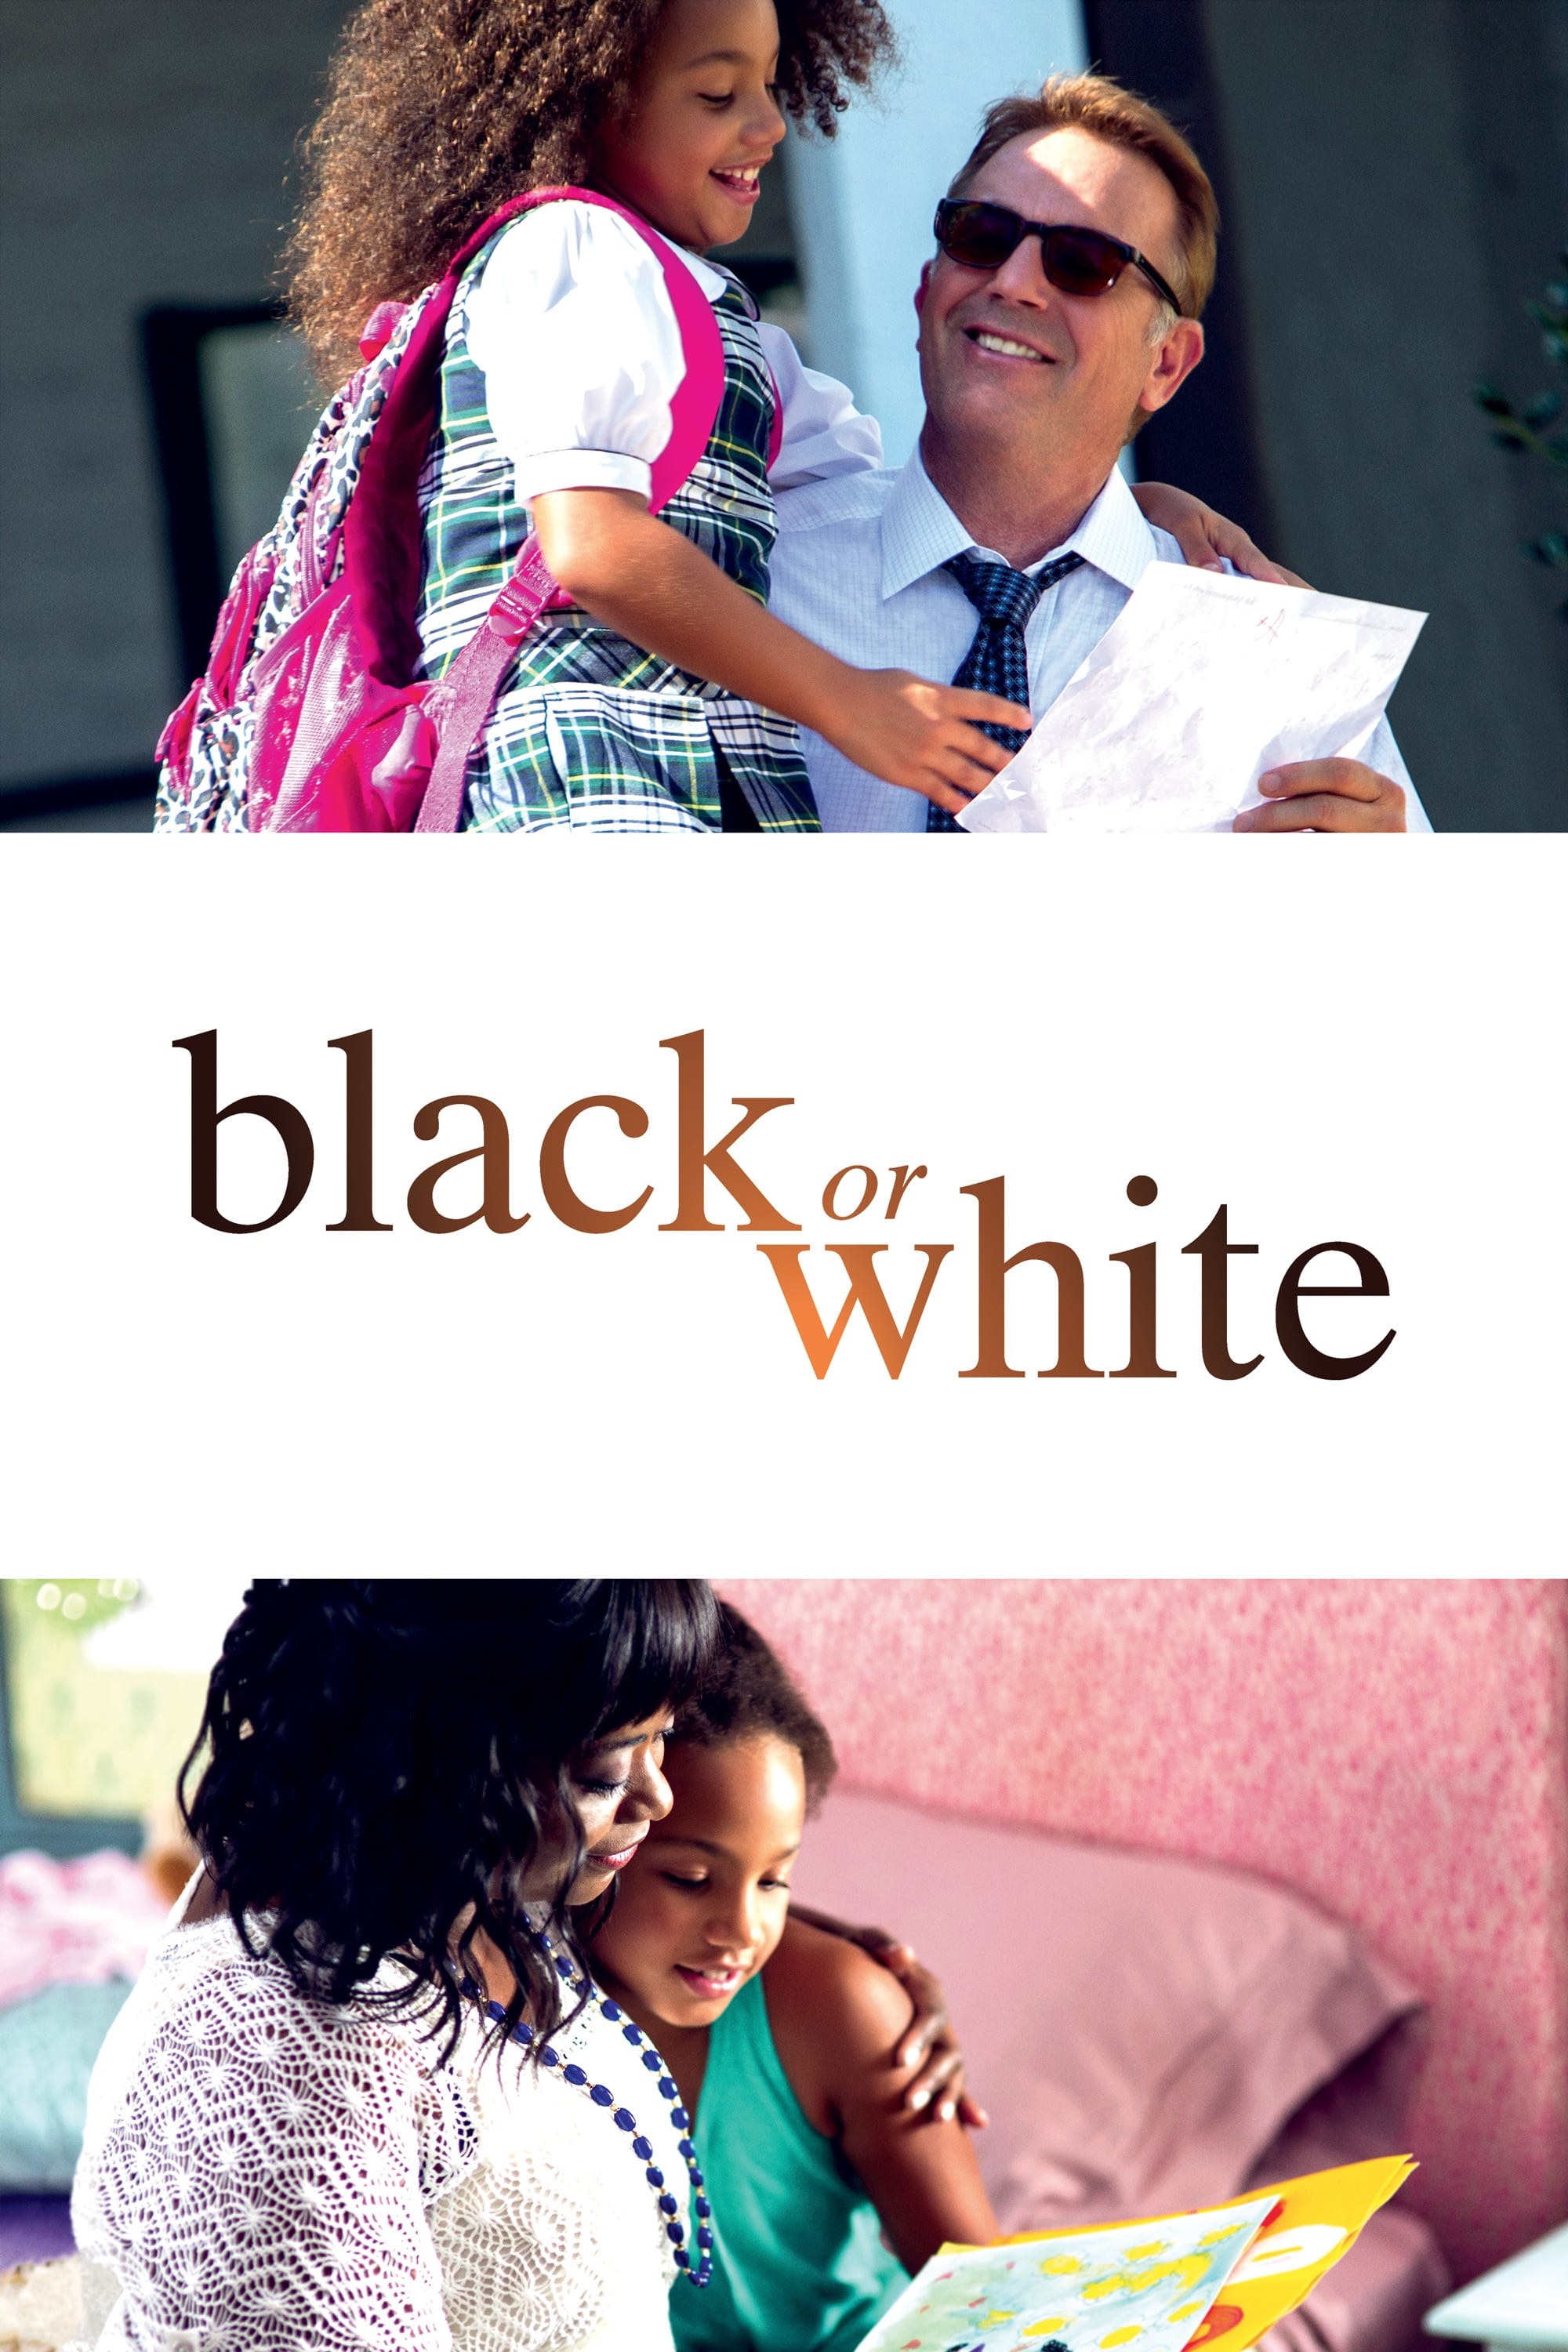 Black or White film